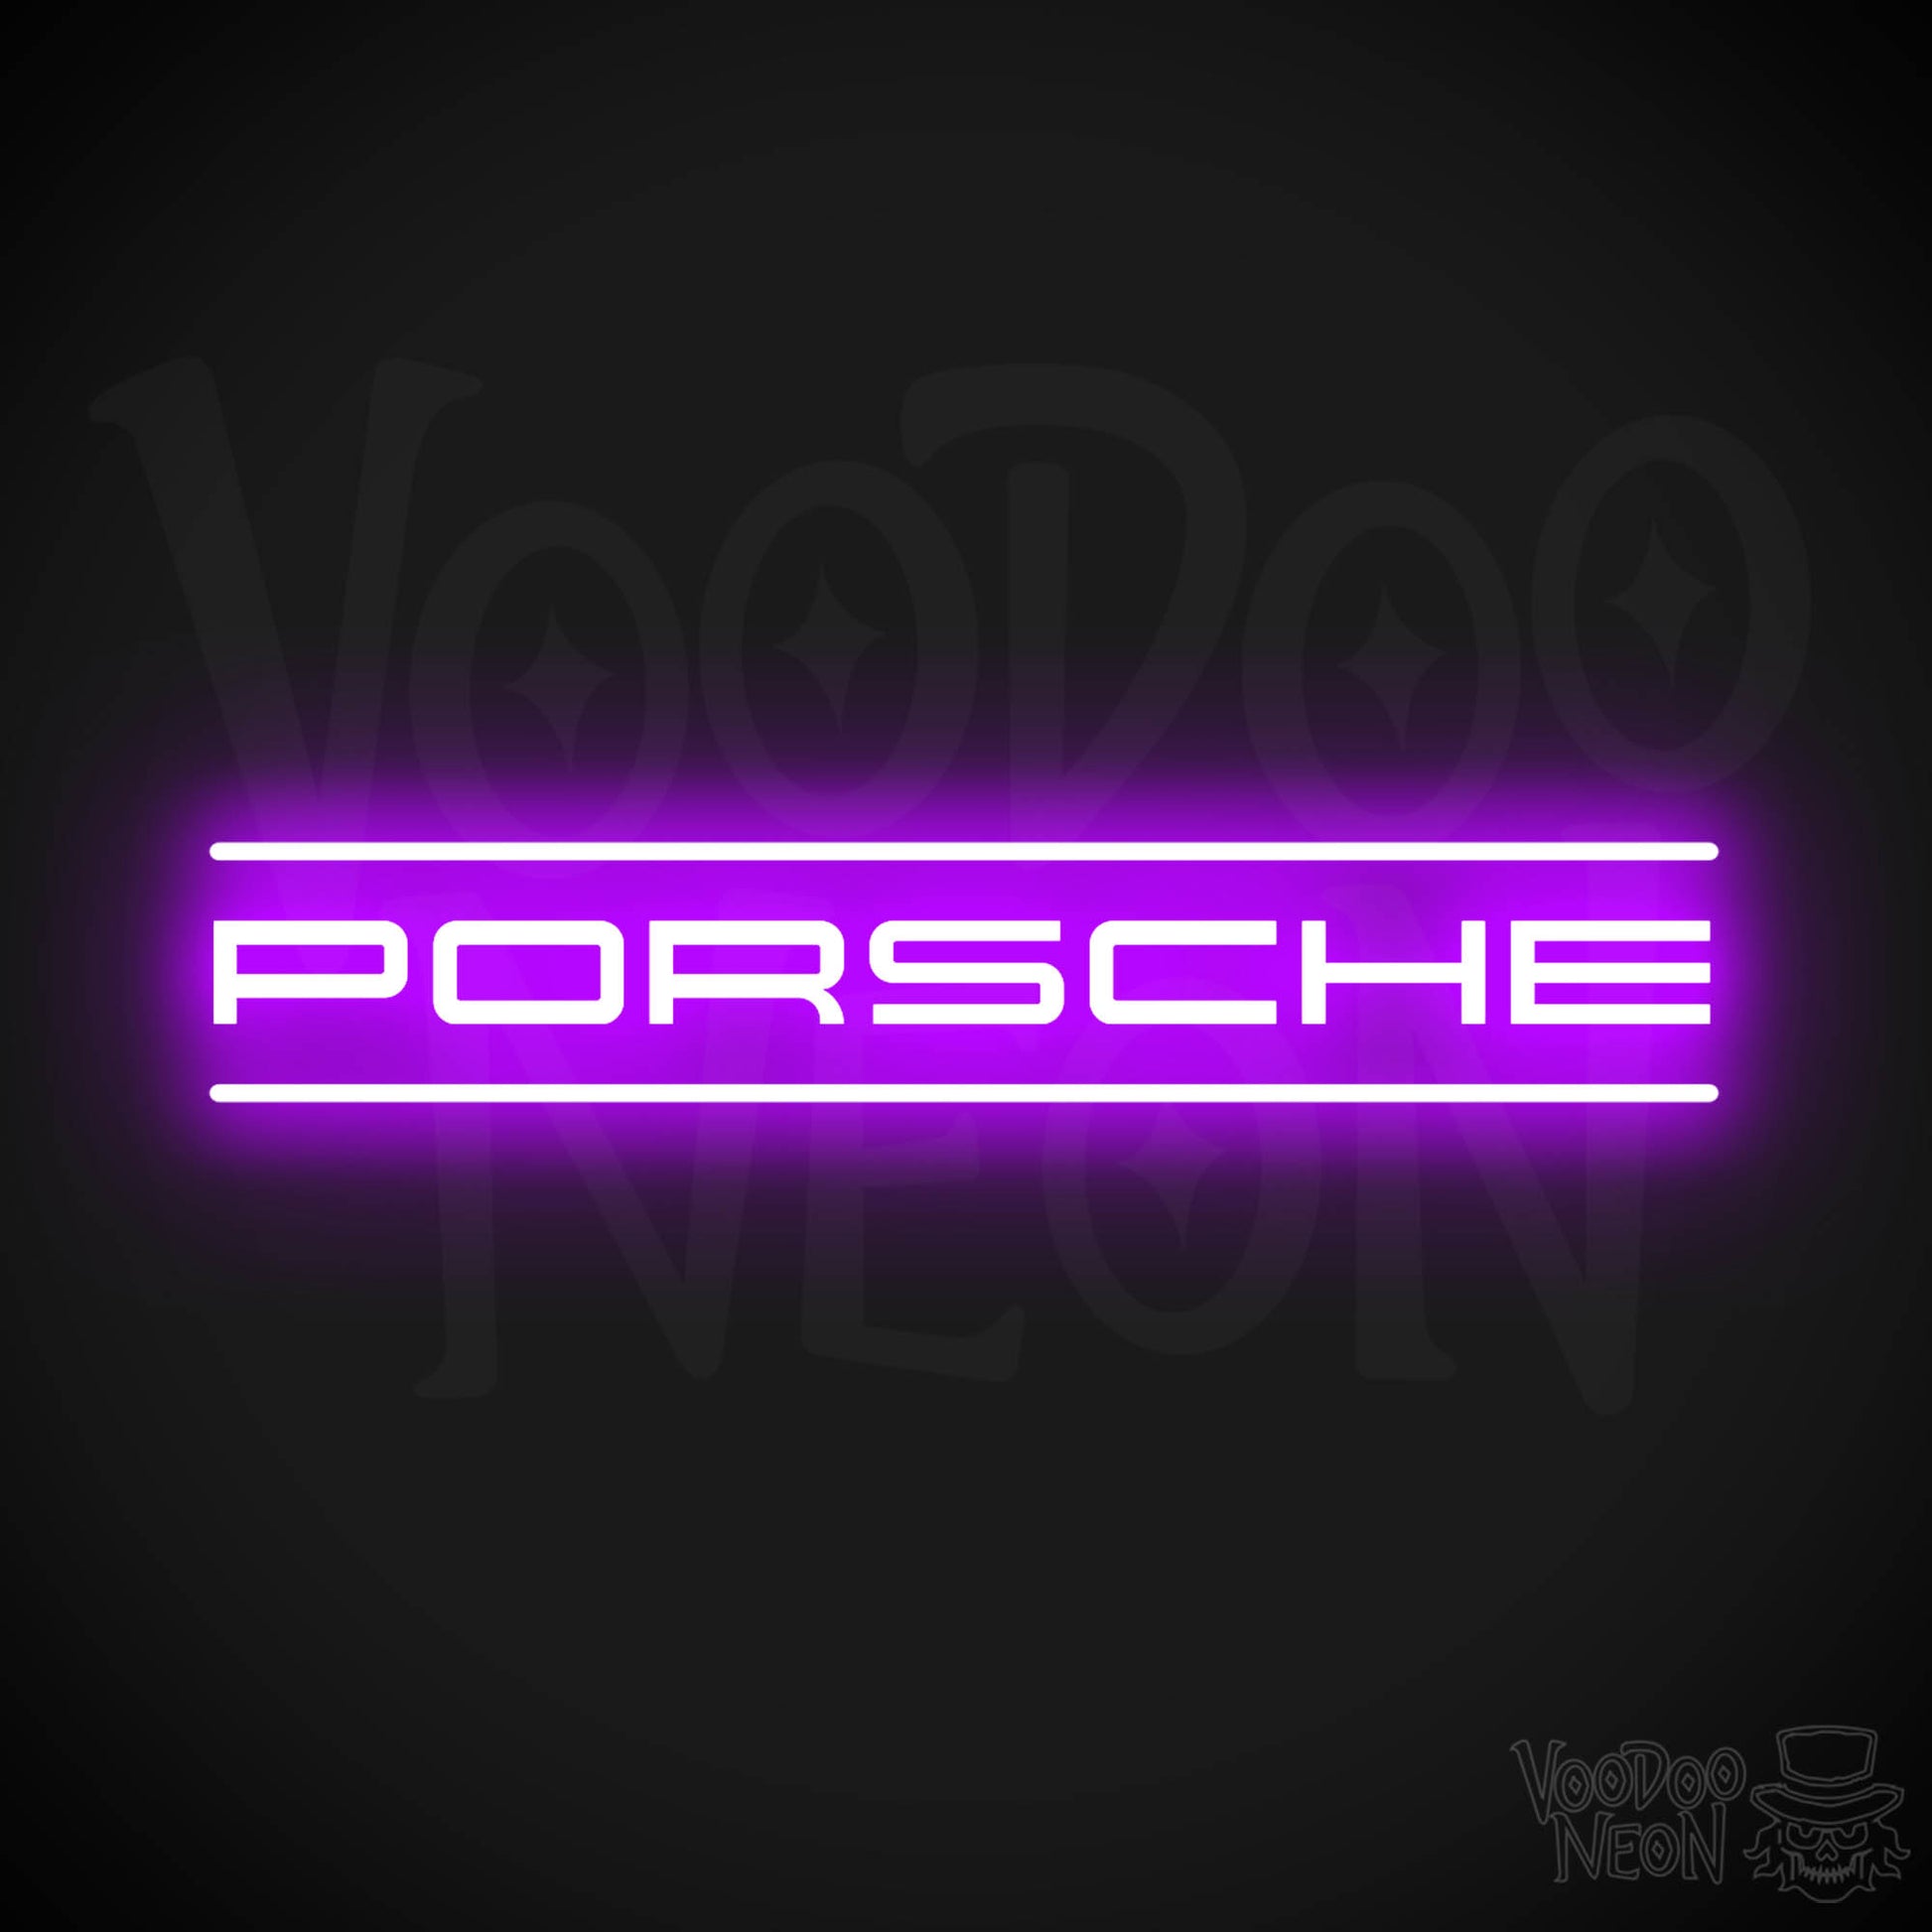 Porsche Neon Sign - Porsche Sign - Porsche Decor - Wall Art - Color Purple